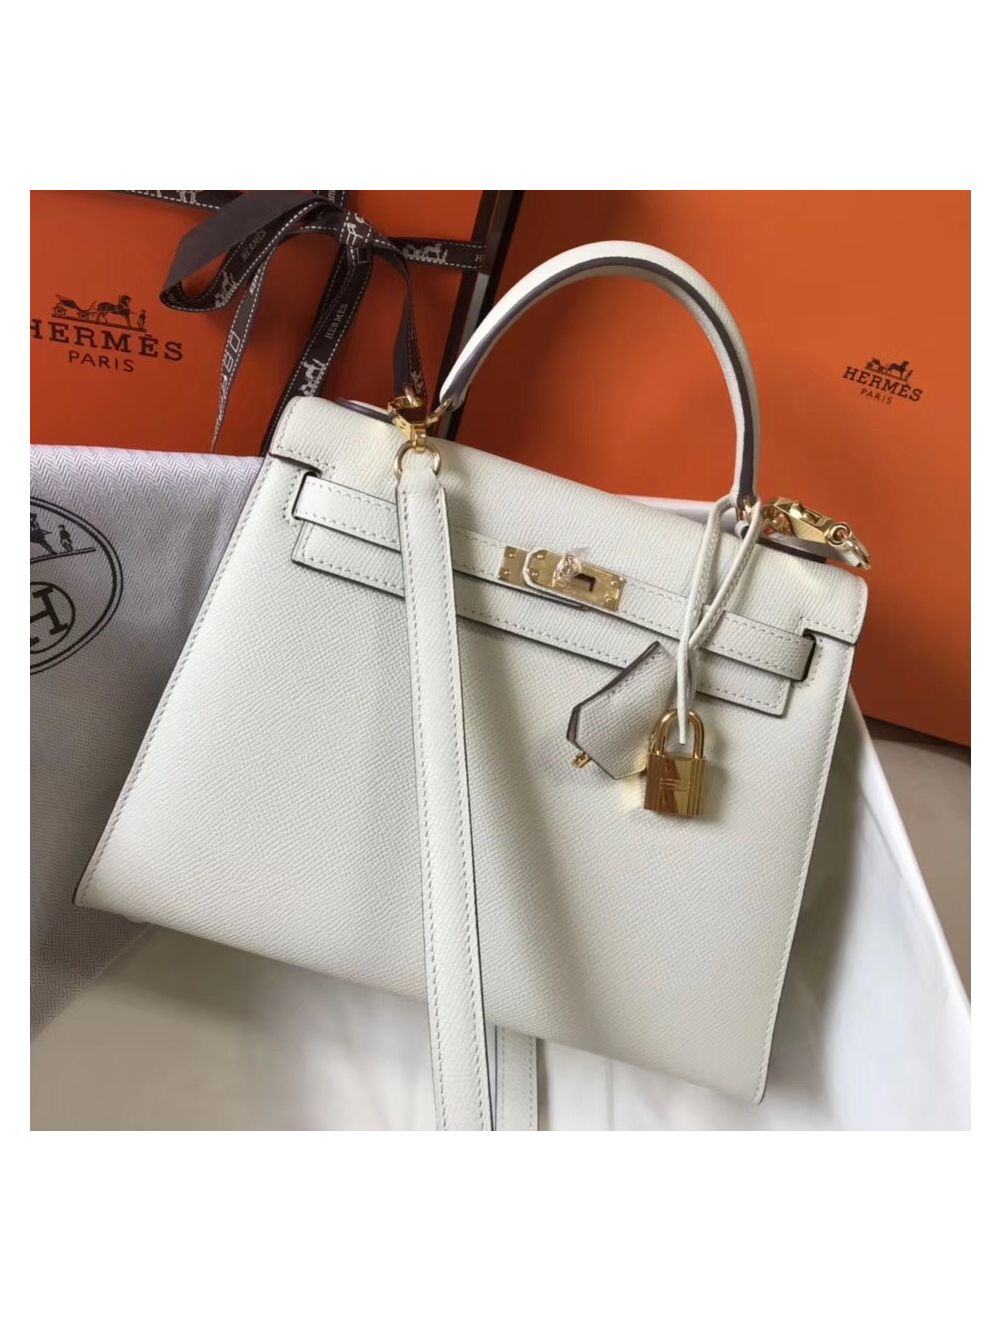 Replica Hermes Kelly 25cm Sellier Bag In Malachite Epsom Leather